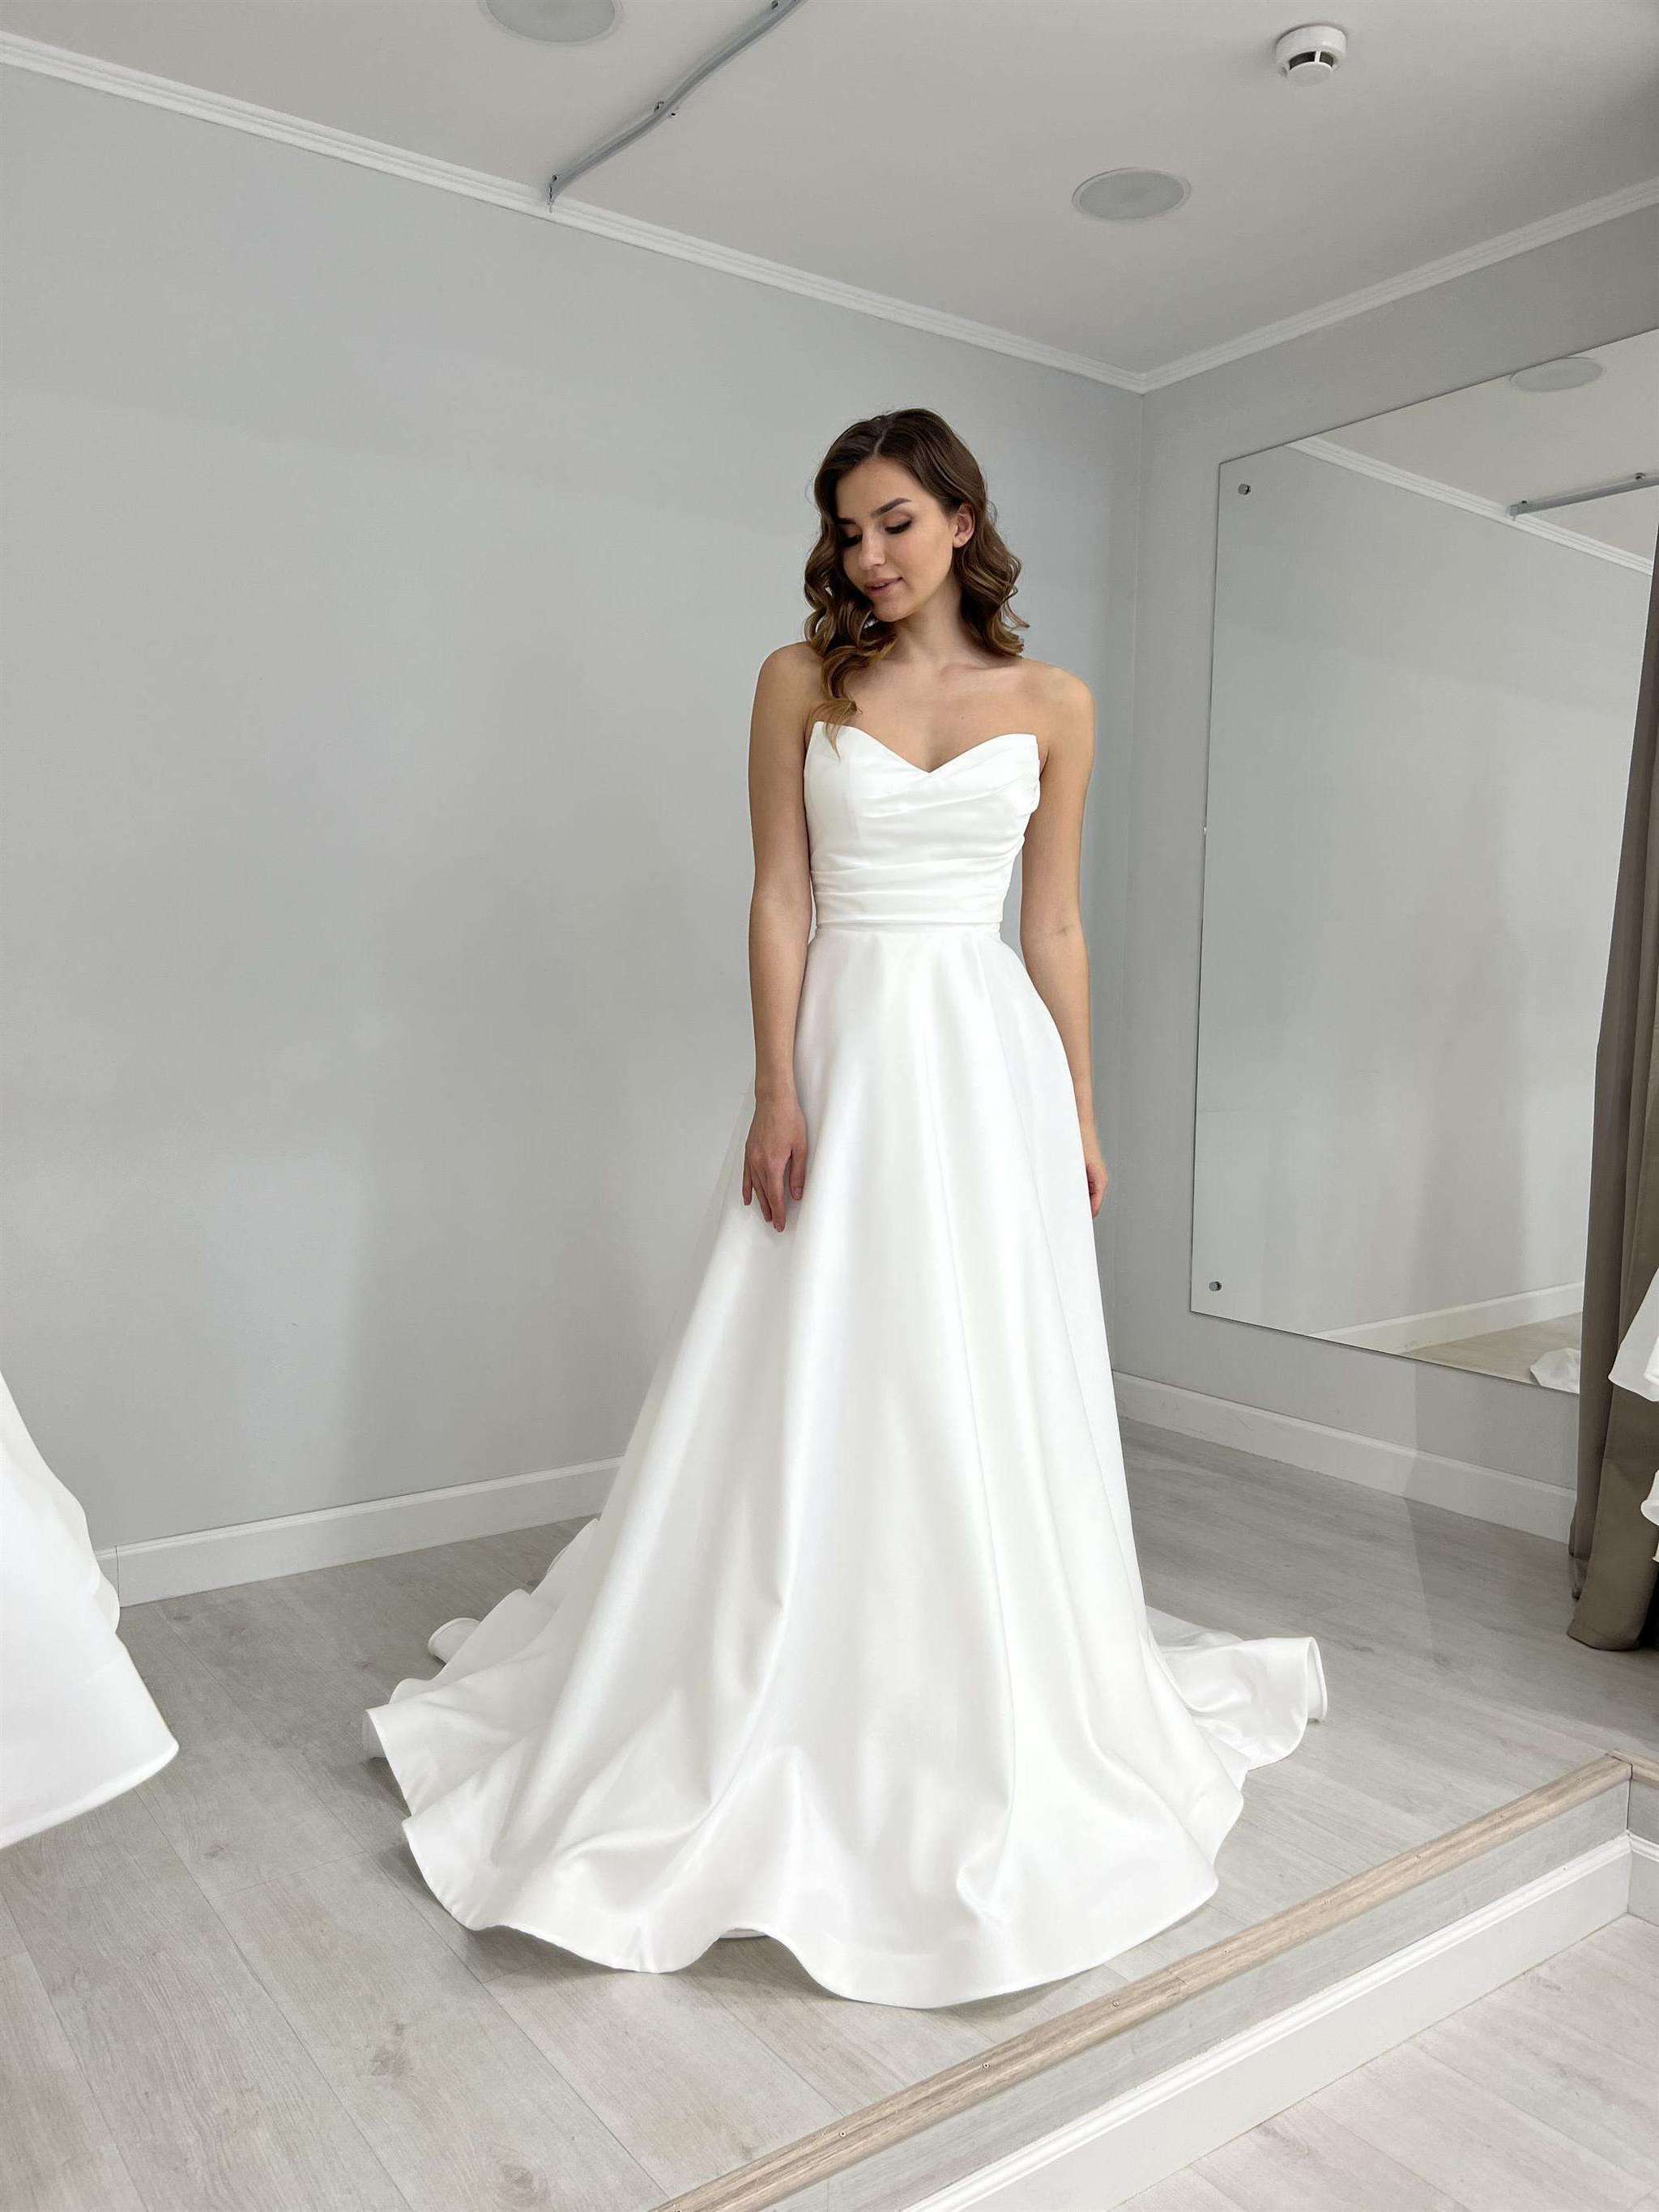 Как найти идеальную ткань для своего свадебного платья?